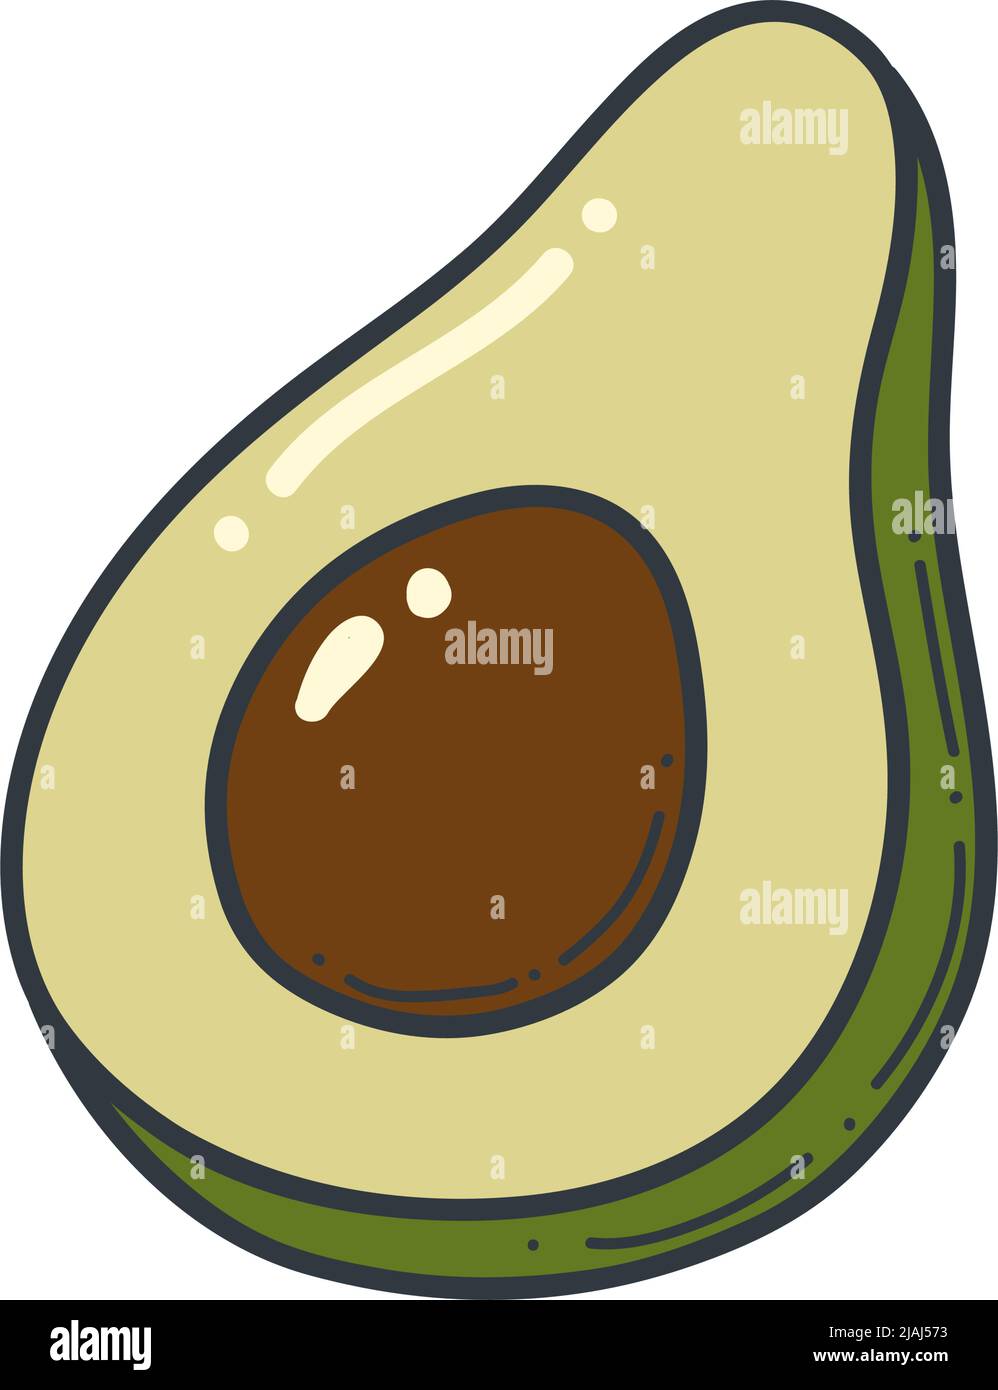 Icône de contour d'avocat. Logo illustration de fruits et légumes biologiques isolés. Illustration de Vecteur